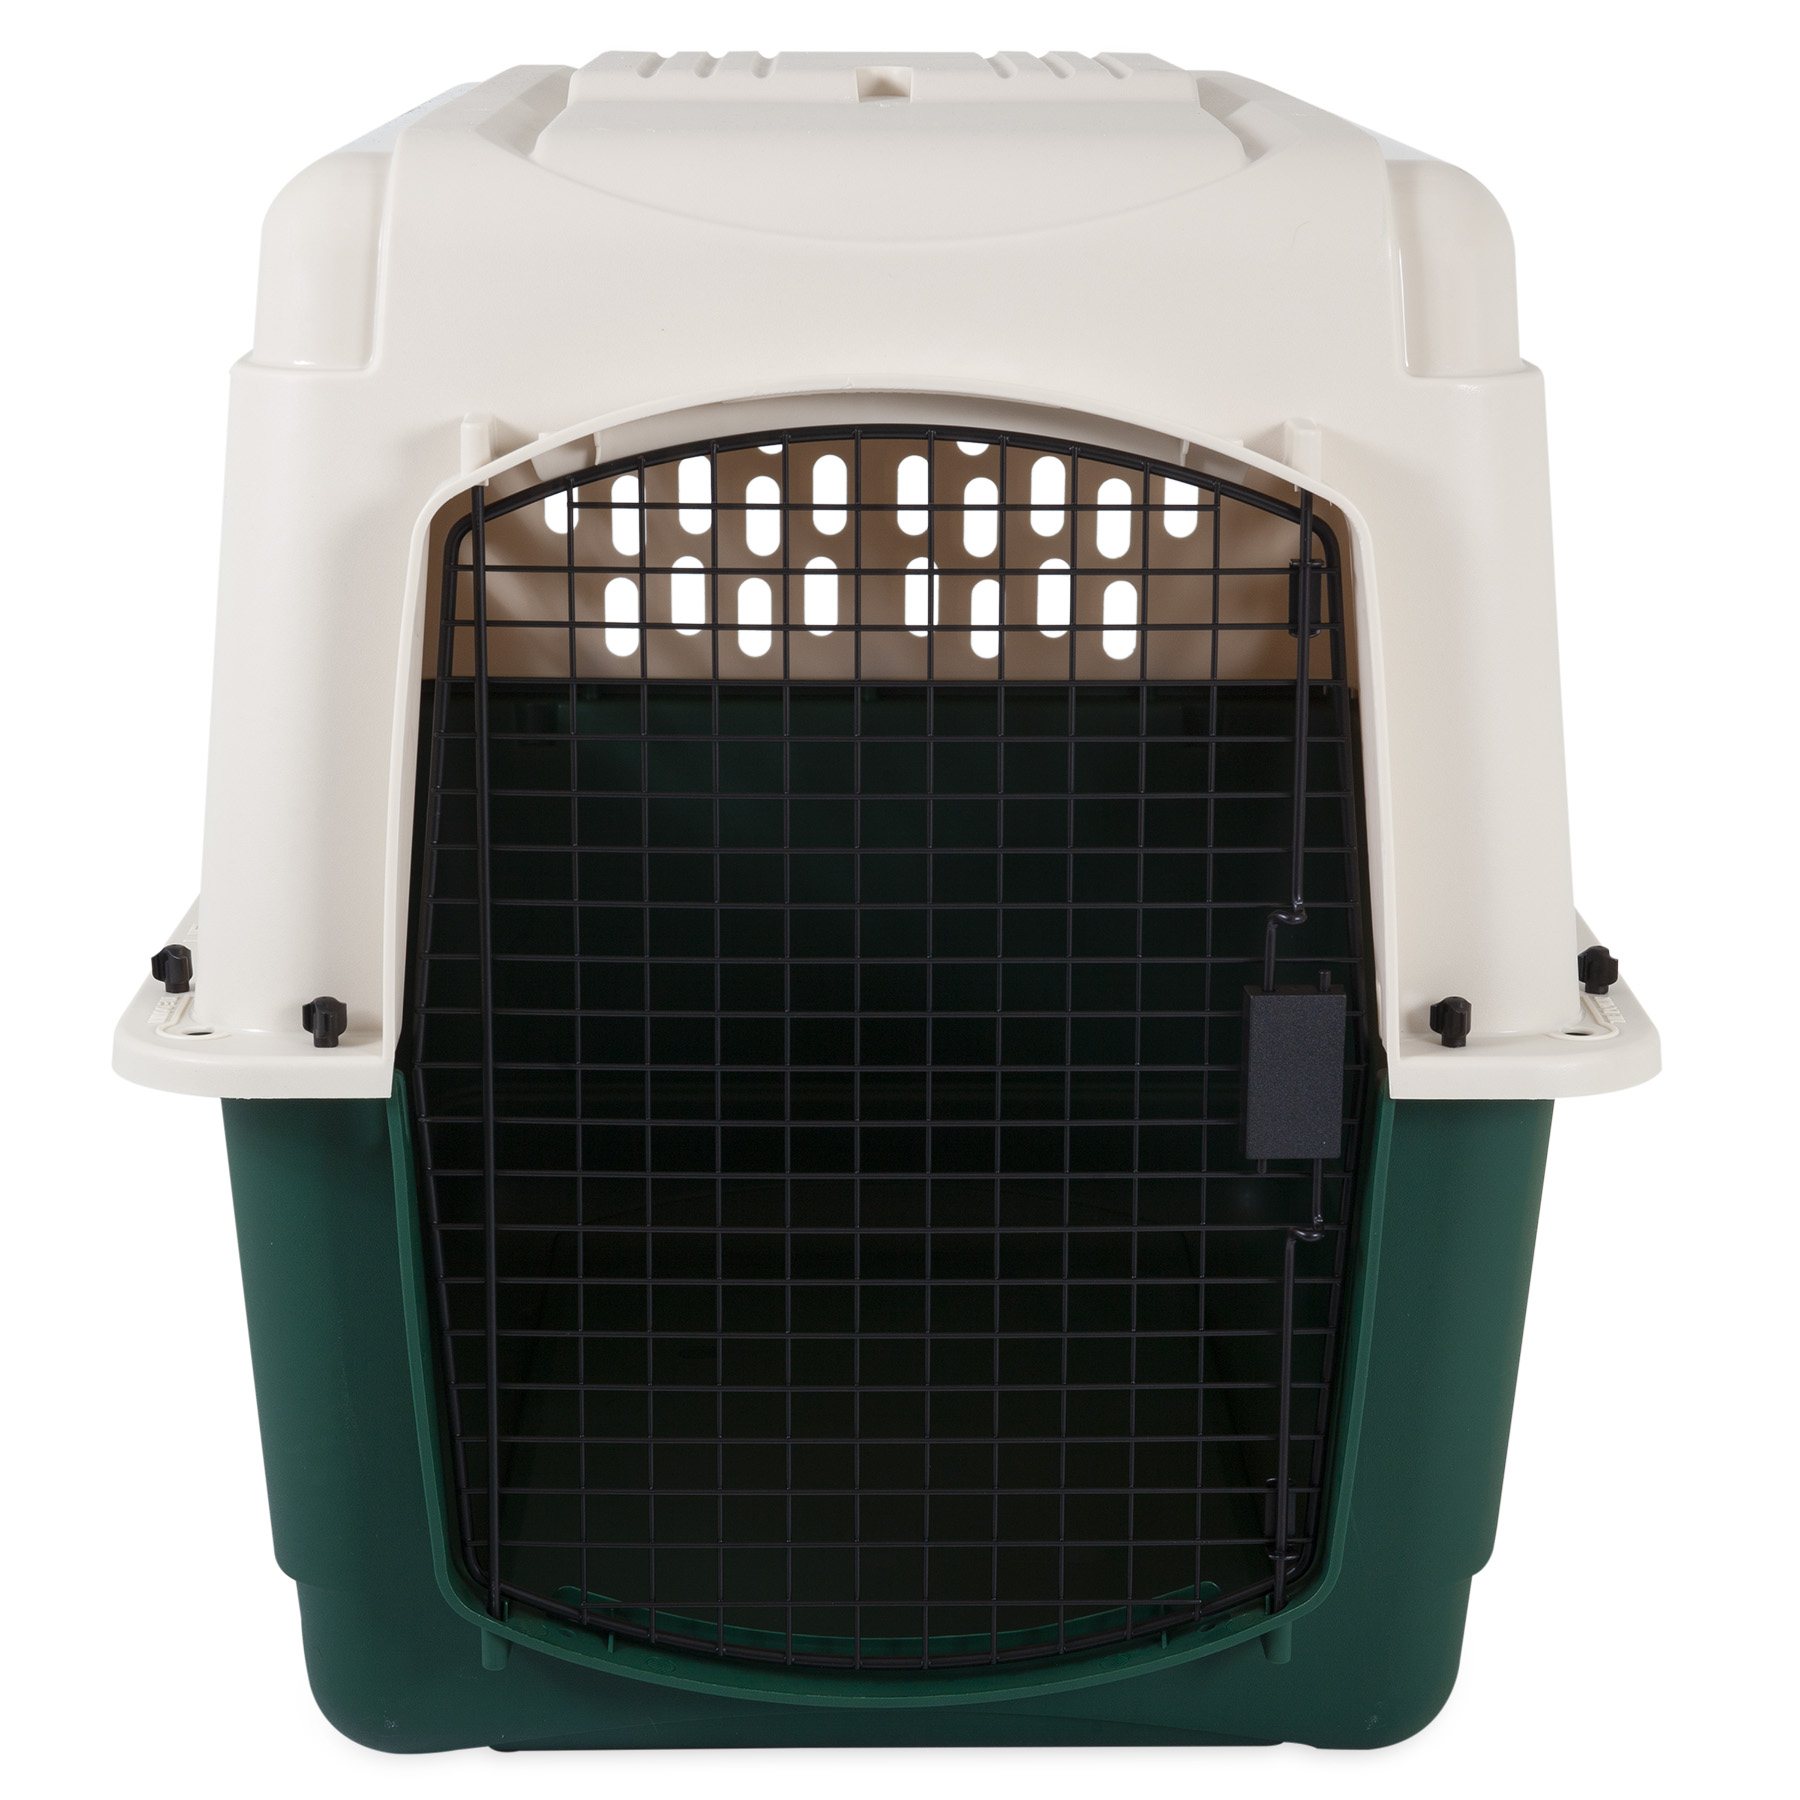 Ruffmaxx Plastic Dog Kennel, Tan/Green, 36"L - image 3 of 6